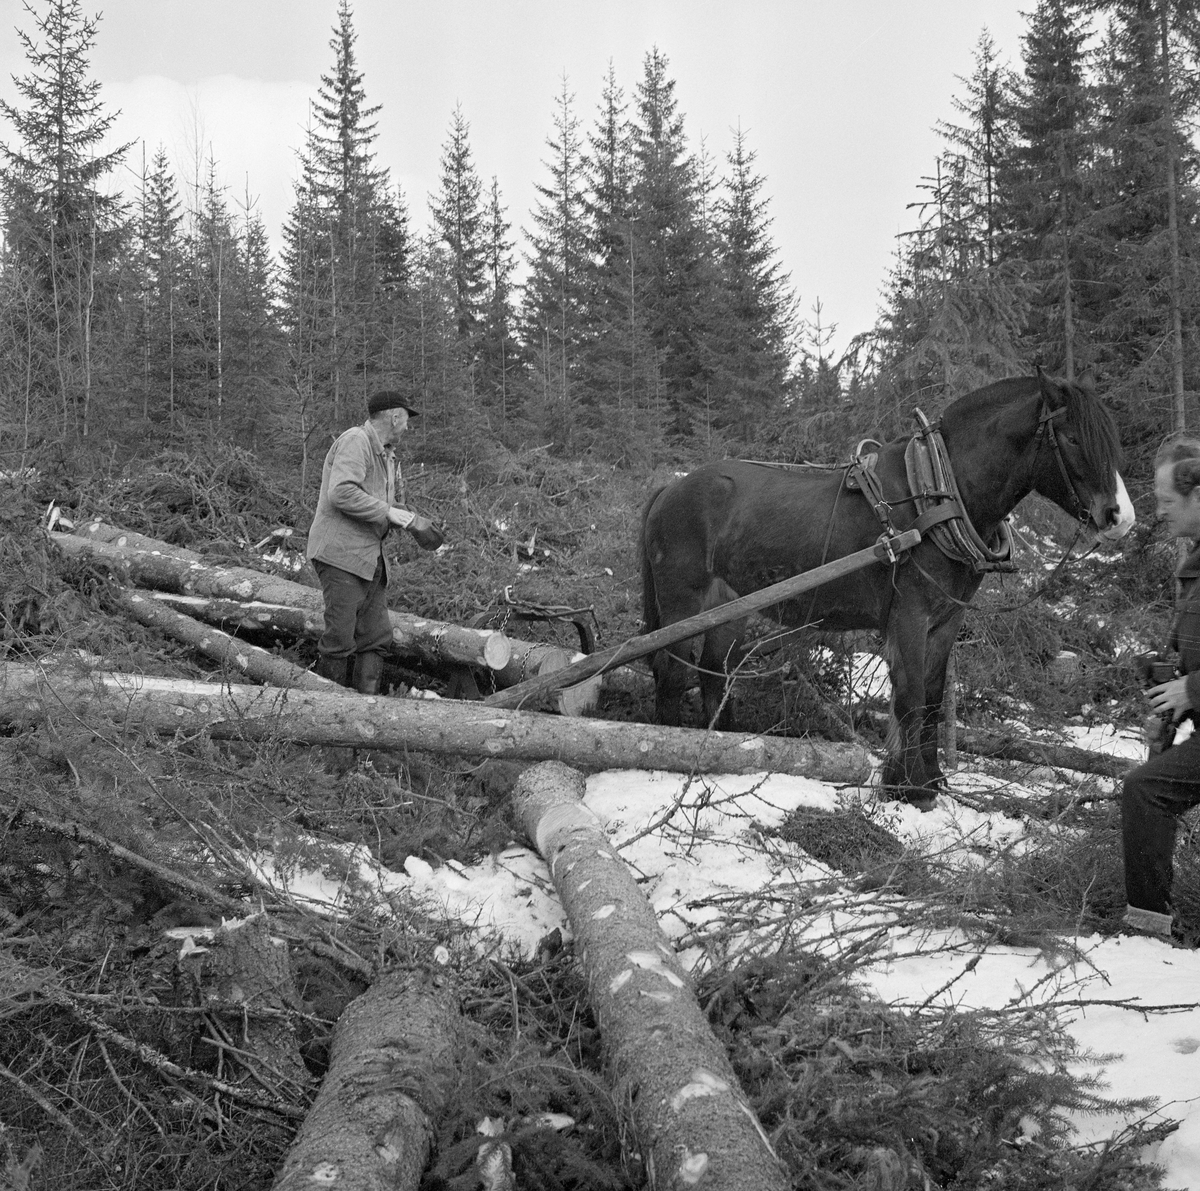 Jørgen Larsen (1919-1988) fra Hernes i Elverum (Hedmark) lunner tømmer med arbeidshesten «Blessen» på ei lita hogstflate i skogsområdet Stavåsen vinteren 1971. Lunninga dreide seg om å samle tømmeret på hogstteigene i «lunner» - hauger - som skulle ligge lett tilgjengelige ved tømmervegene som ble brukt når virket seinere skulle transporteres ut av skogen ved hjelp av sleder med større lastekapasitet. Under lunninga brukte Jørgen Larsen såkalt bøyledrag. Bøyledraget besto av dragarmer av tre med ei omvendt U-formet jernbøyle som «bank» (forbindelsesledd) mellom de bakre delene av trekkstengene.  Disse er beslått på undersida, slik at de fungerte som meier.  Jernbøyla var utstyrt med jernlenker (snarelenker) som stokkendene ble stroppet i, slik at det bare var bakendene som ble slept på bakken.  Bøyledraget ble vanlig i norsk skogbruk i åra etter 2. verdenskrig. Larsen var kledd i vadmelsbukser og vindjakke. Han hadde langskaftete gummistøvler på beina og skjoldlue på hodet.